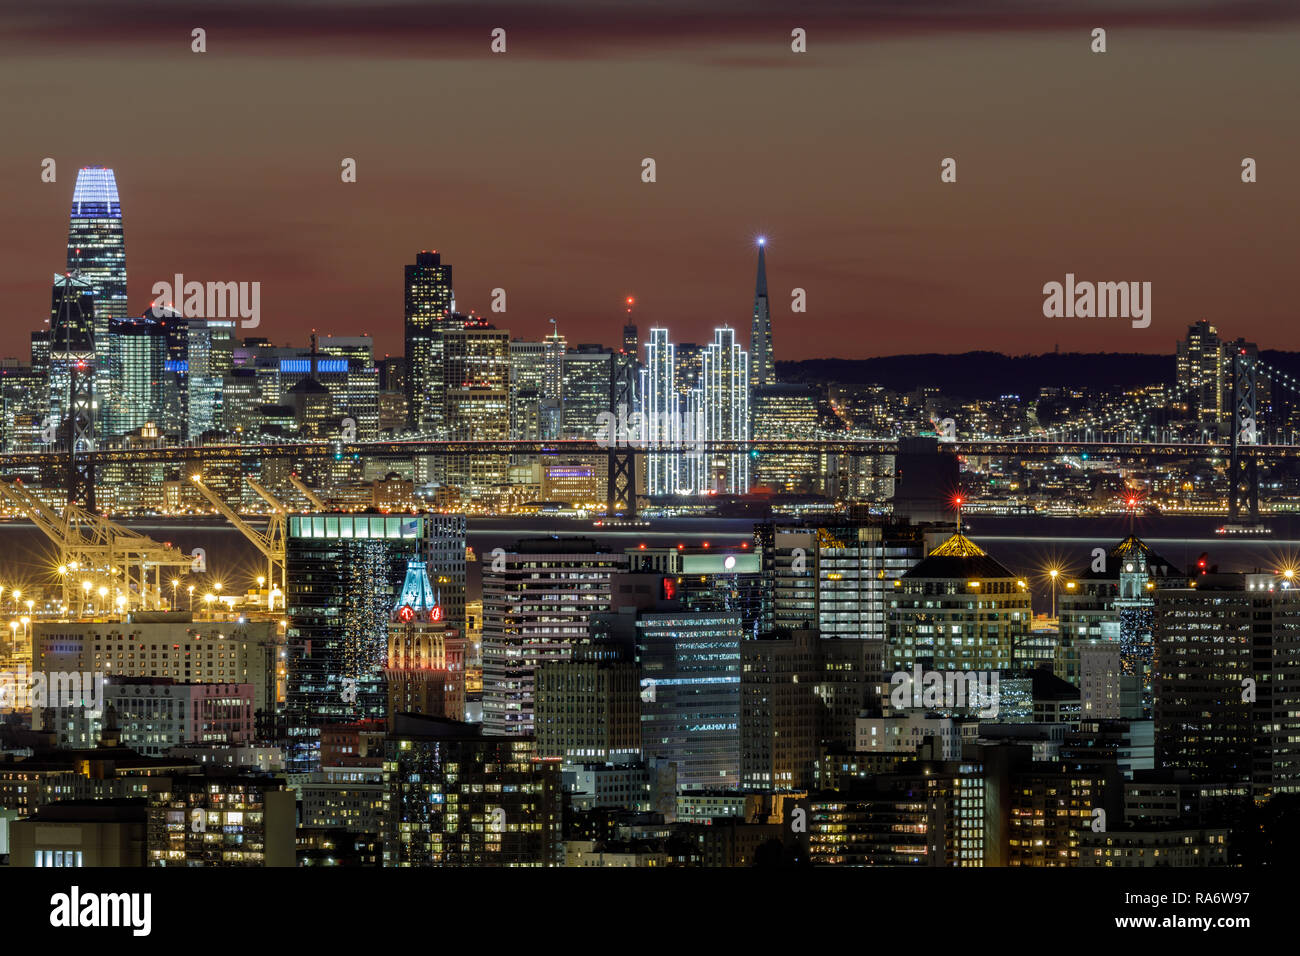 Oakland e San Francisco Twilight dall'alto illuminato con luci delle vacanze. Foto Stock